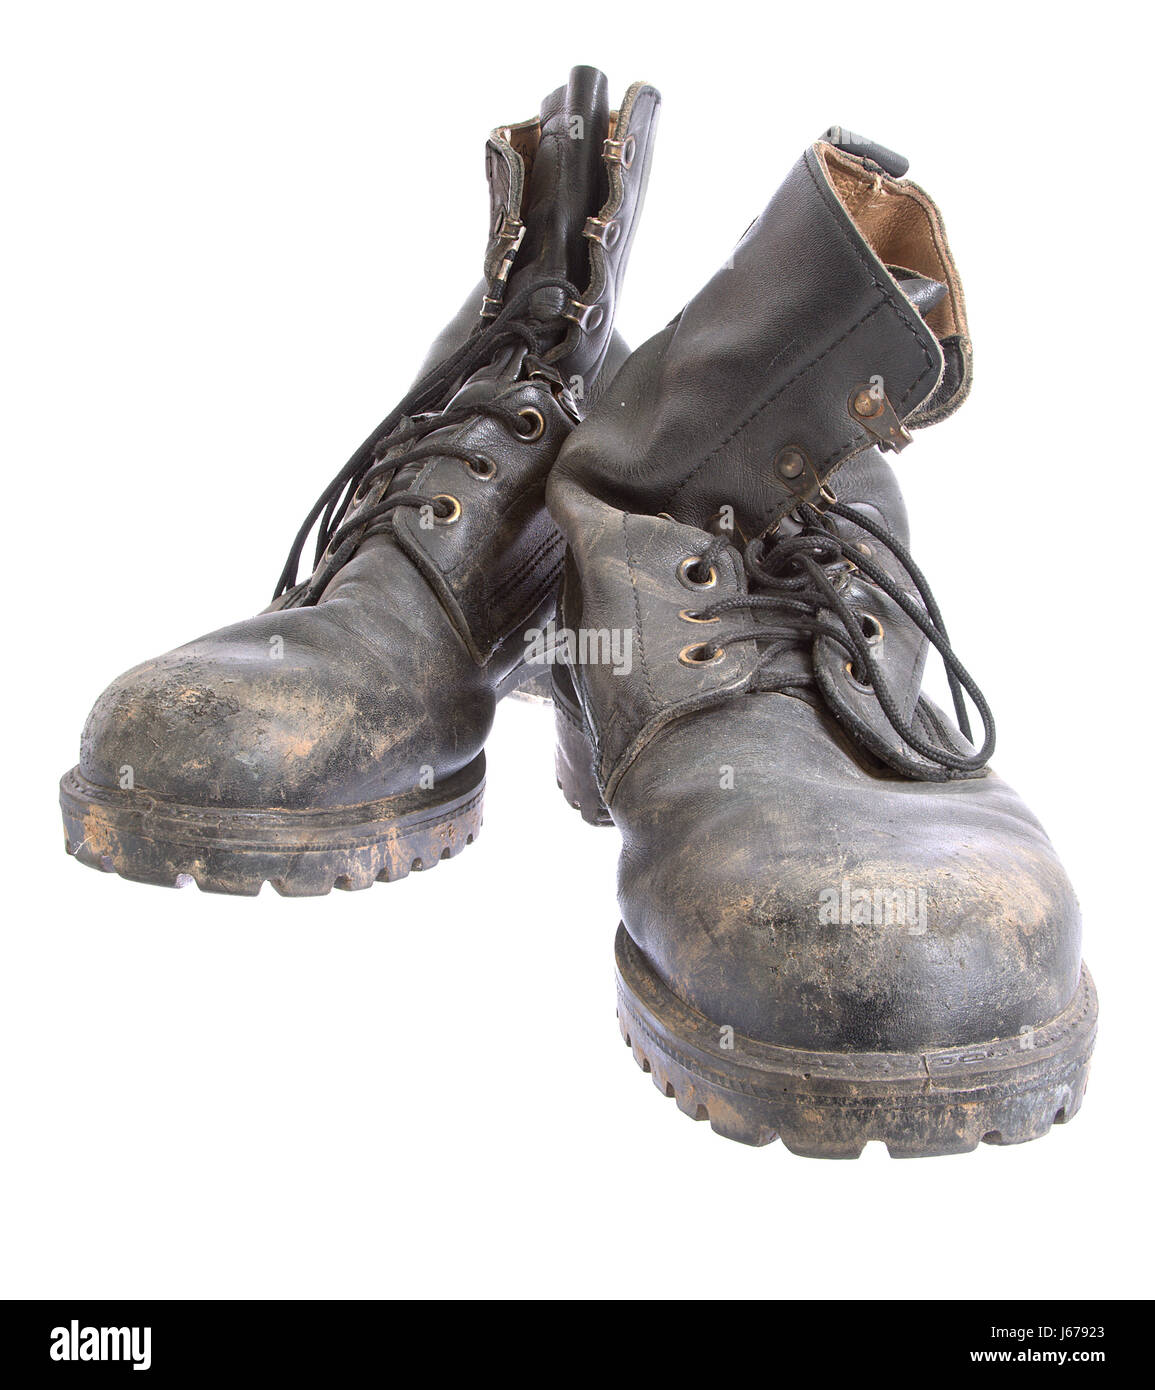 Schuhe isolierten Schuhe Leder Schmutz Schlamm schmutzig getragen altmodisch,  überholt Stockfotografie - Alamy